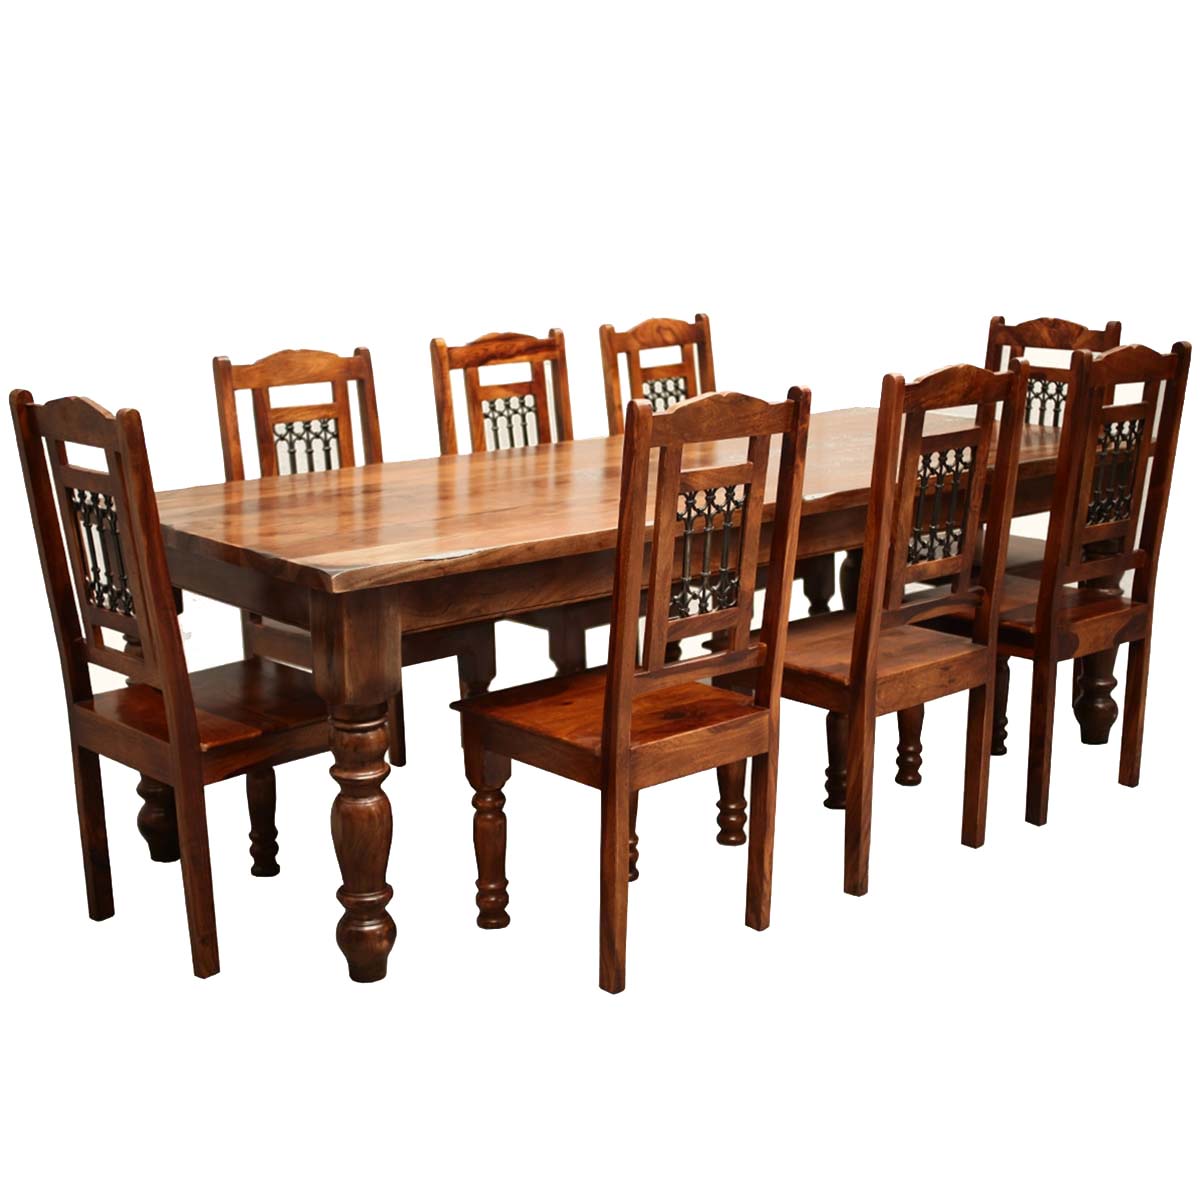 8 chair dinner table